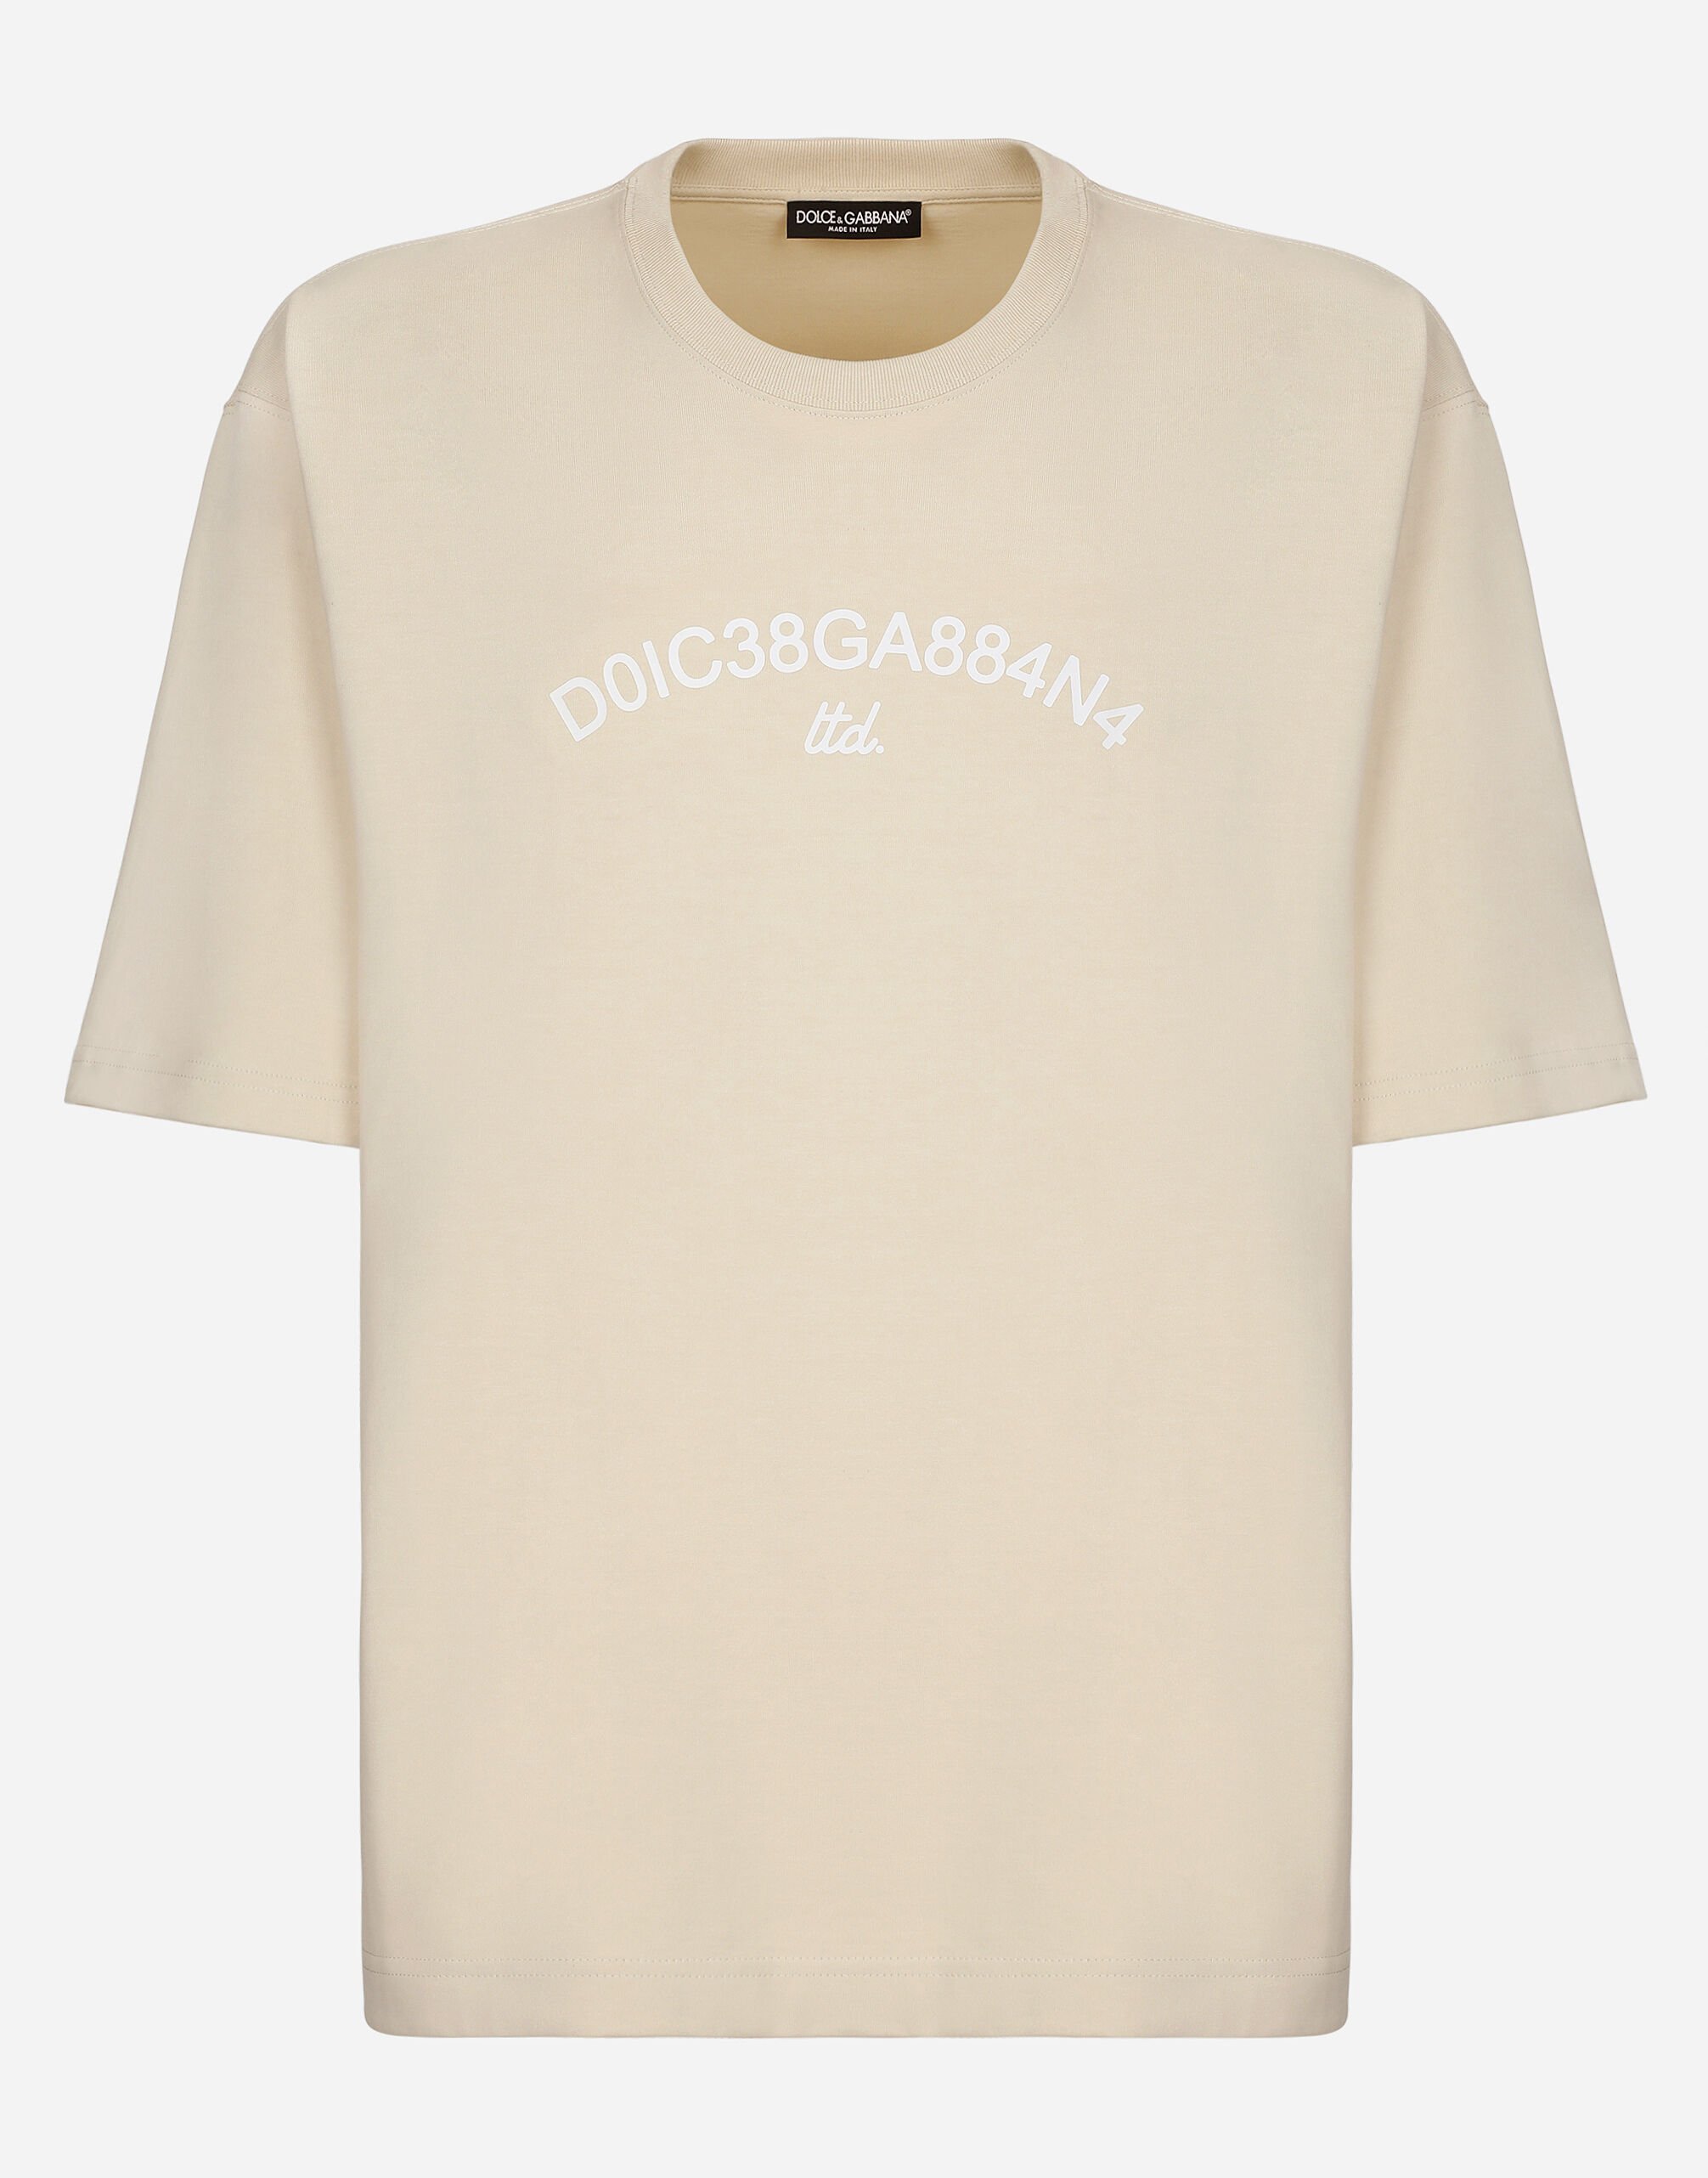 Dolce & Gabbana Cotton T-shirt with Dolce&Gabbana logo Beige GY6GMTGH145